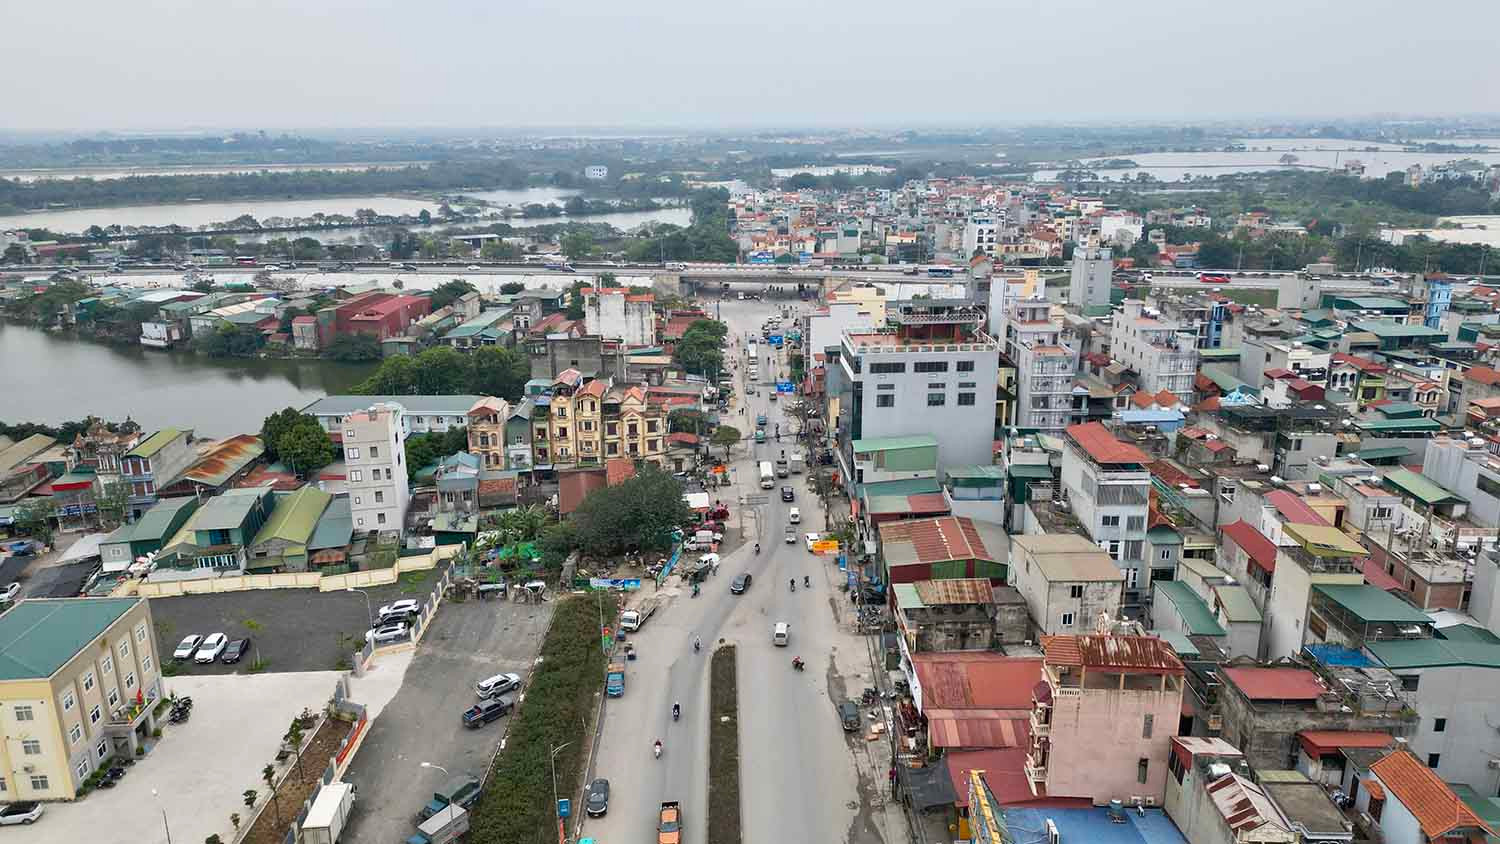 Tuyến đường Tam Trinh được mở rộng sẽ phục vụ nhu cầu đi lại của người dân, làm giảm áp lực giao thông của các tuyến đường chính cửa ngõ phía Nam của Thủ đô (Giải Phòng, Lĩnh Nam, Nguyễn Khoái) góp phần thúc đẩy phát triển kinh tế - xã hội địa phương. Trong ảnh là điểm cuối của dự án.